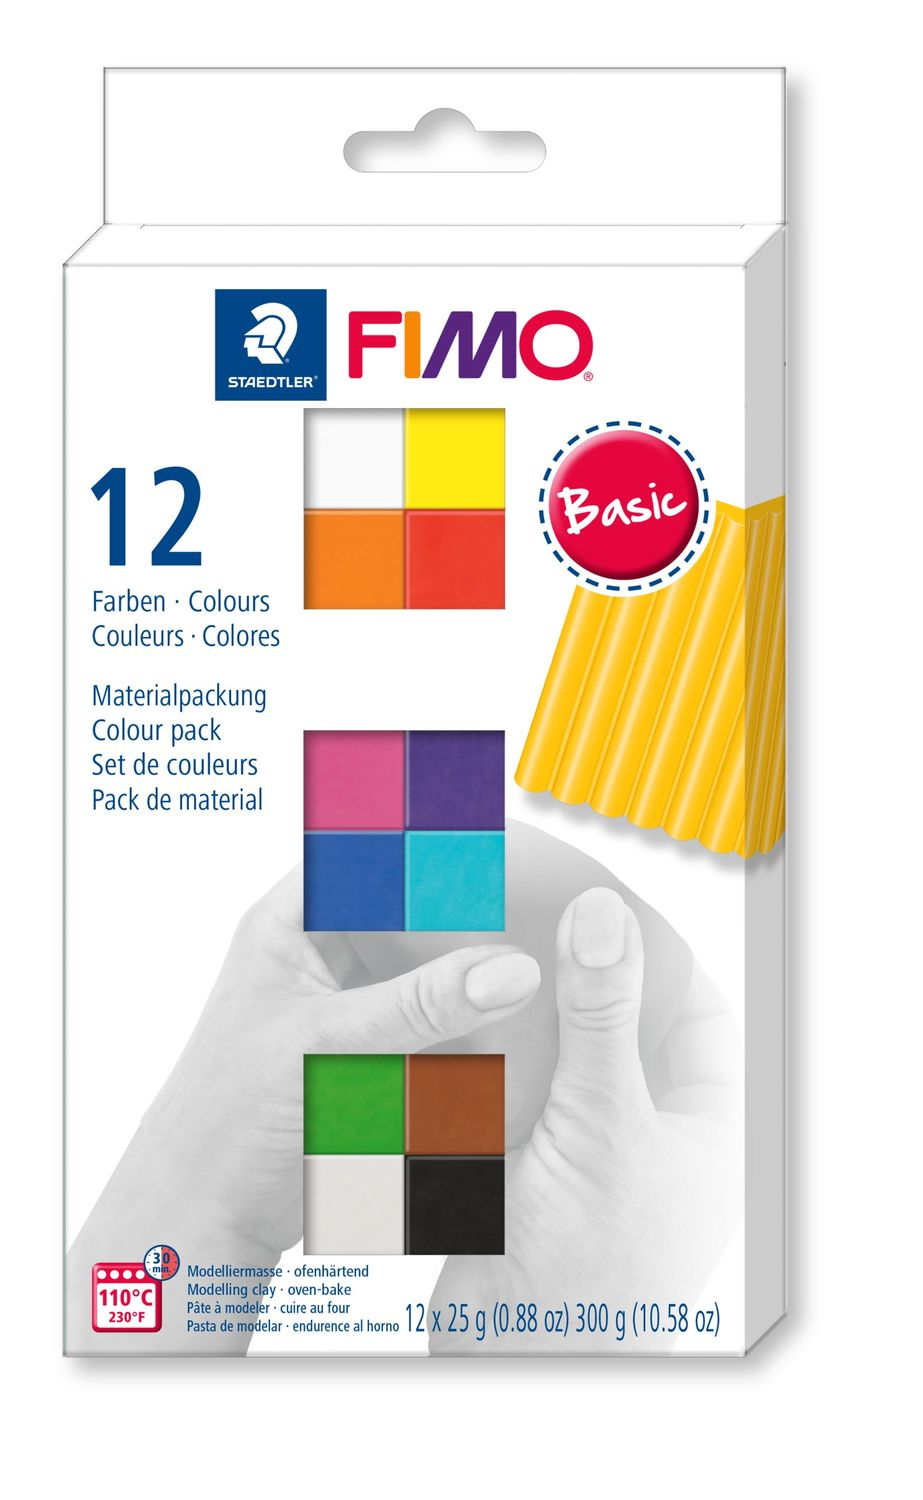 STAEDTLER Fimo Modelliermasse Soft Mehrfarbig - Knetmasse - Gemischte Farben - Erwachsene - 12 Stück(e) - 110 °C - 30 min